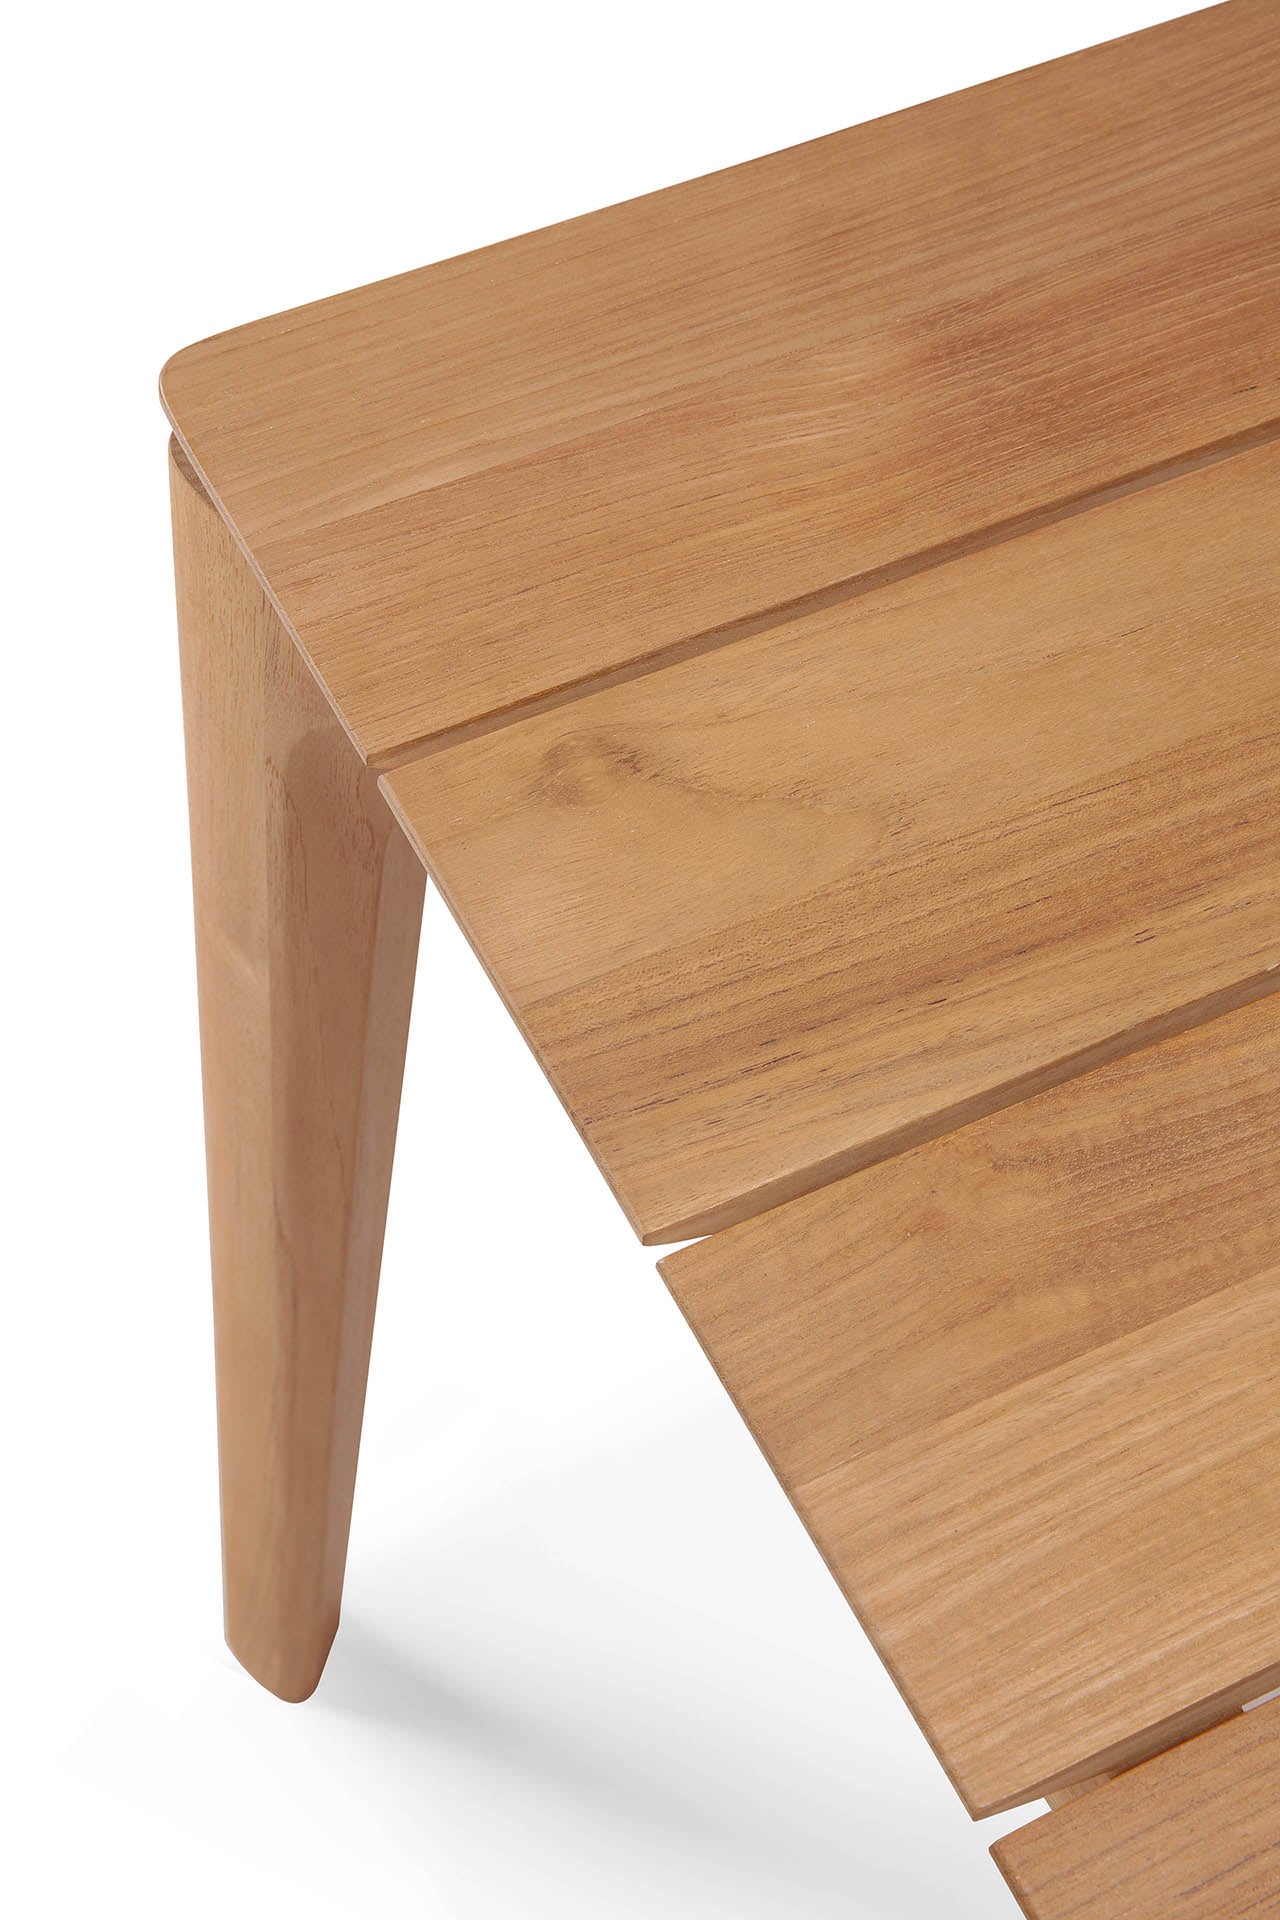 比利時原裝進口實木傢俬 - 戶外系列 - Bok系列柚木餐桌